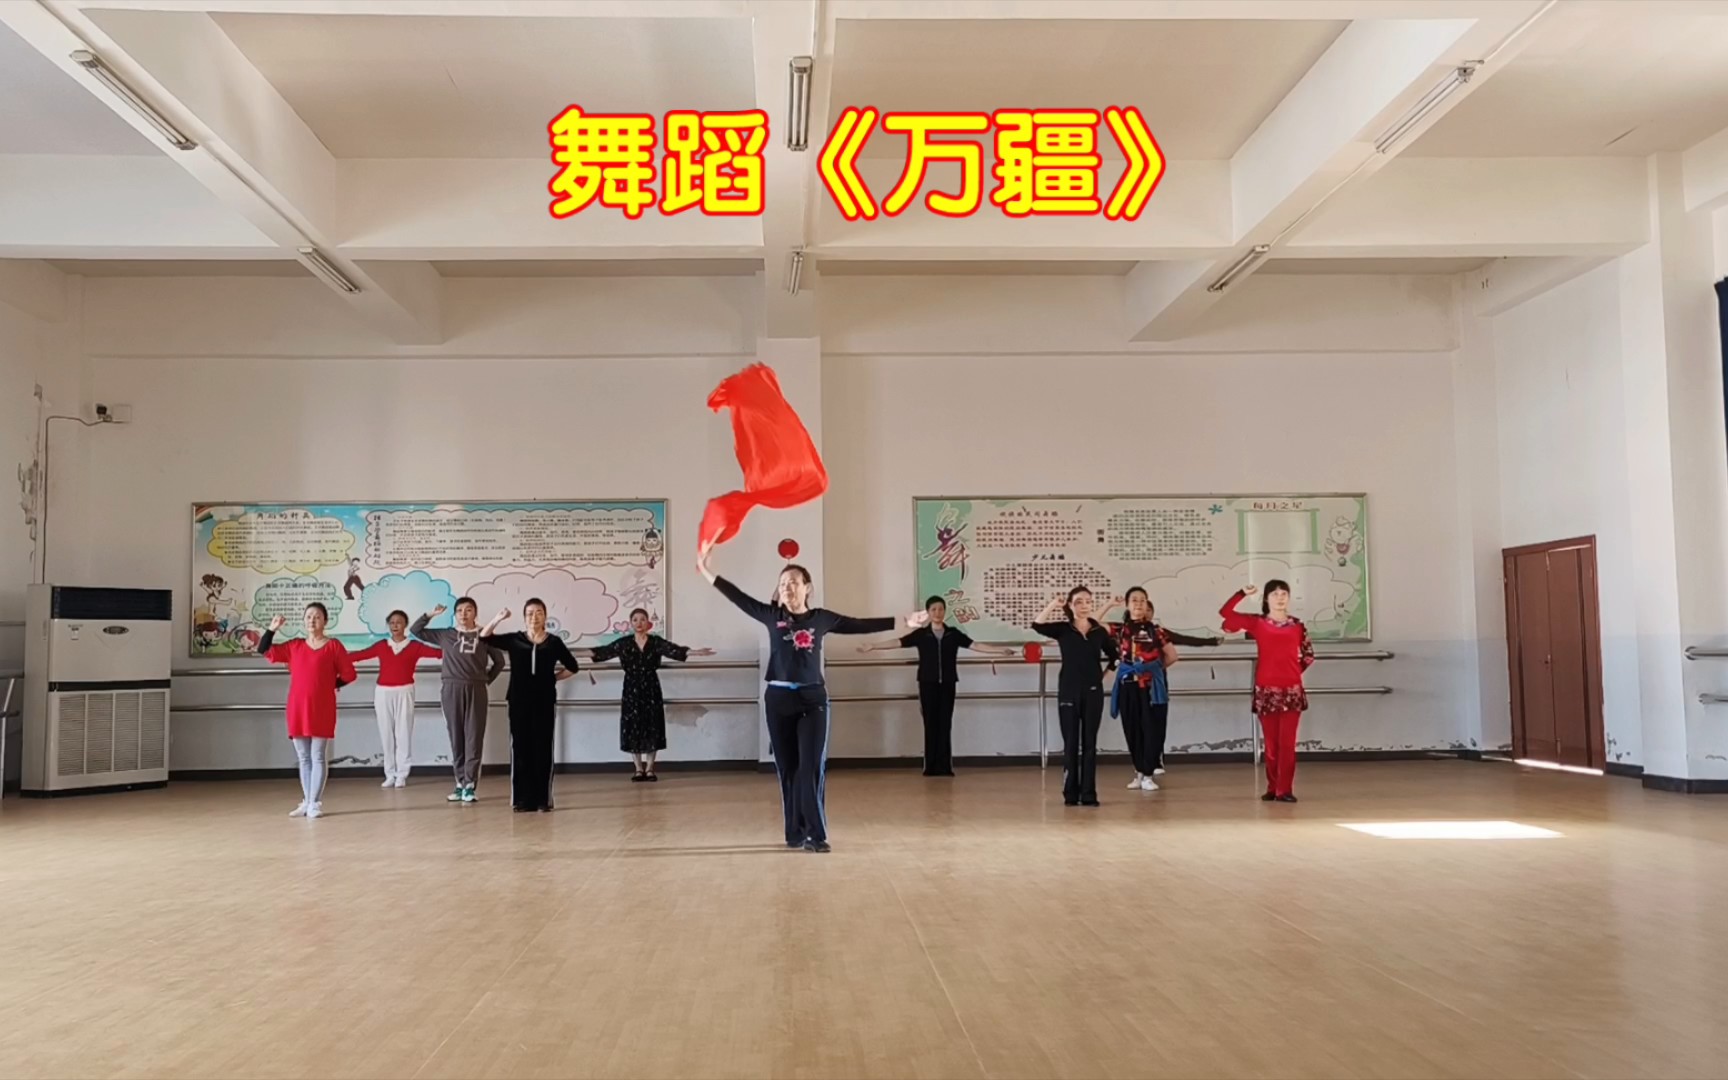 原创舞蹈《万疆》教室排练12人队形版